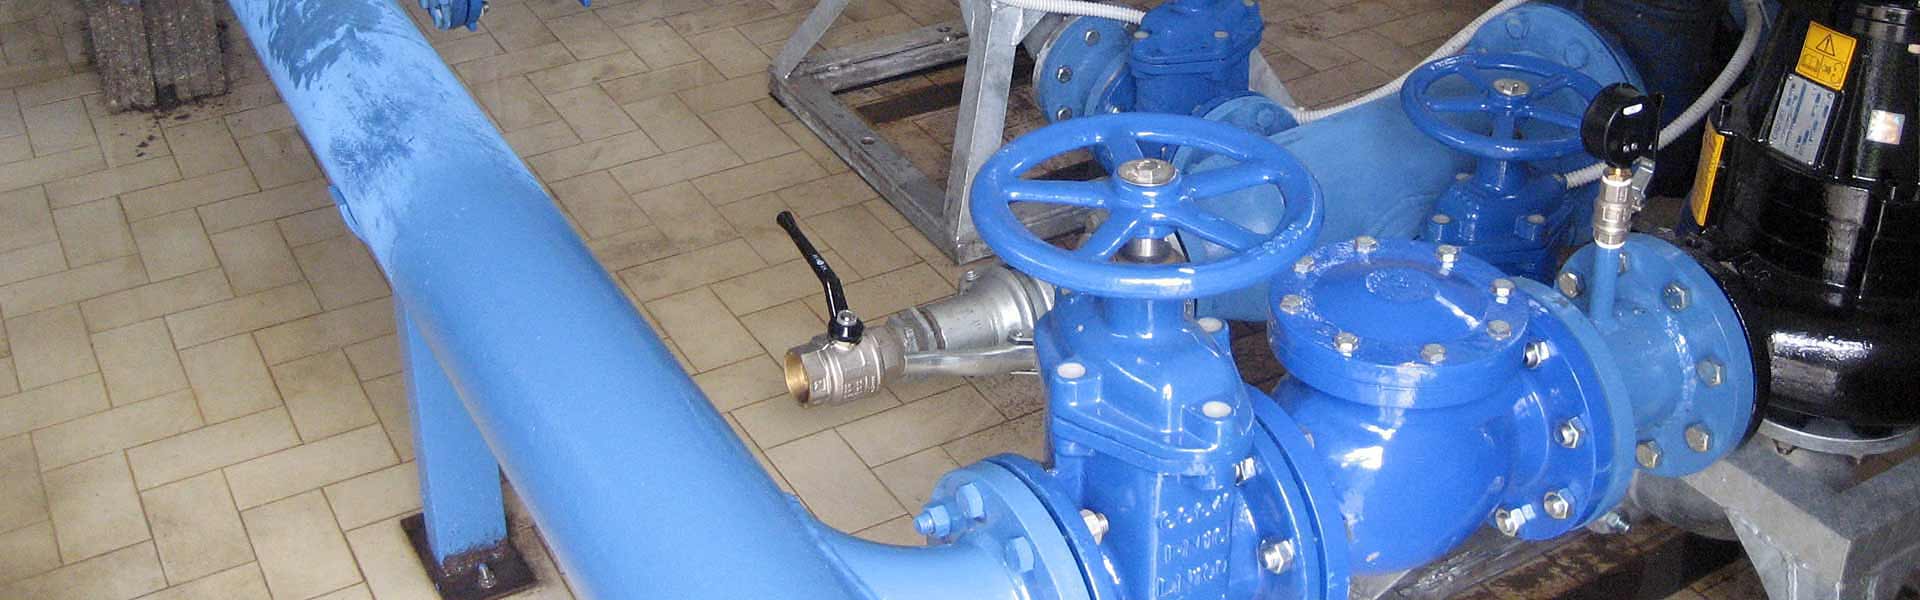 Riparazione impianti pompe sommergibili elettropompe per fognature e acque reflue Ancona Marche